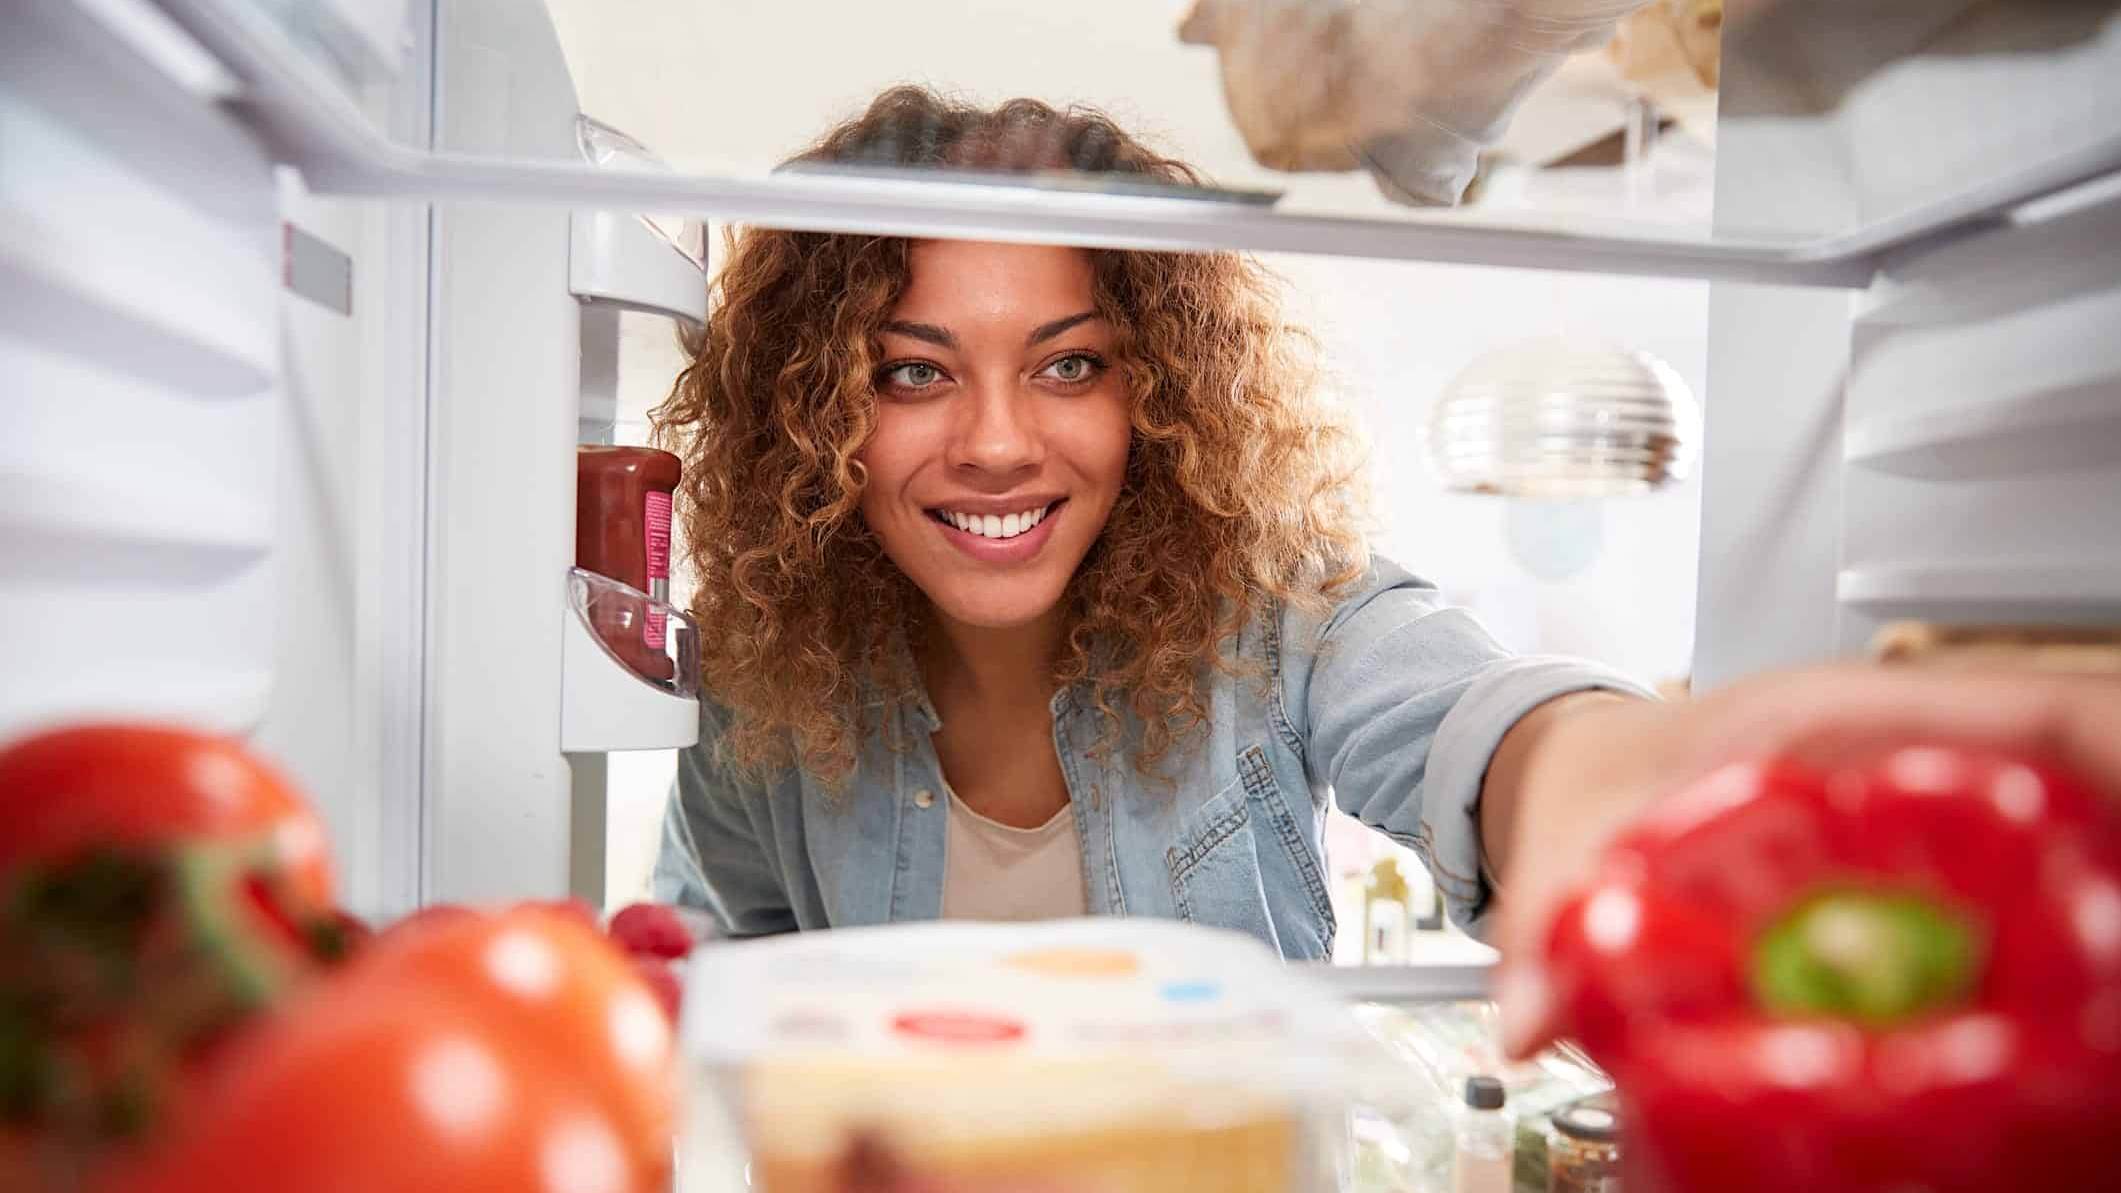 Une femme prend des aliments dans un frigo